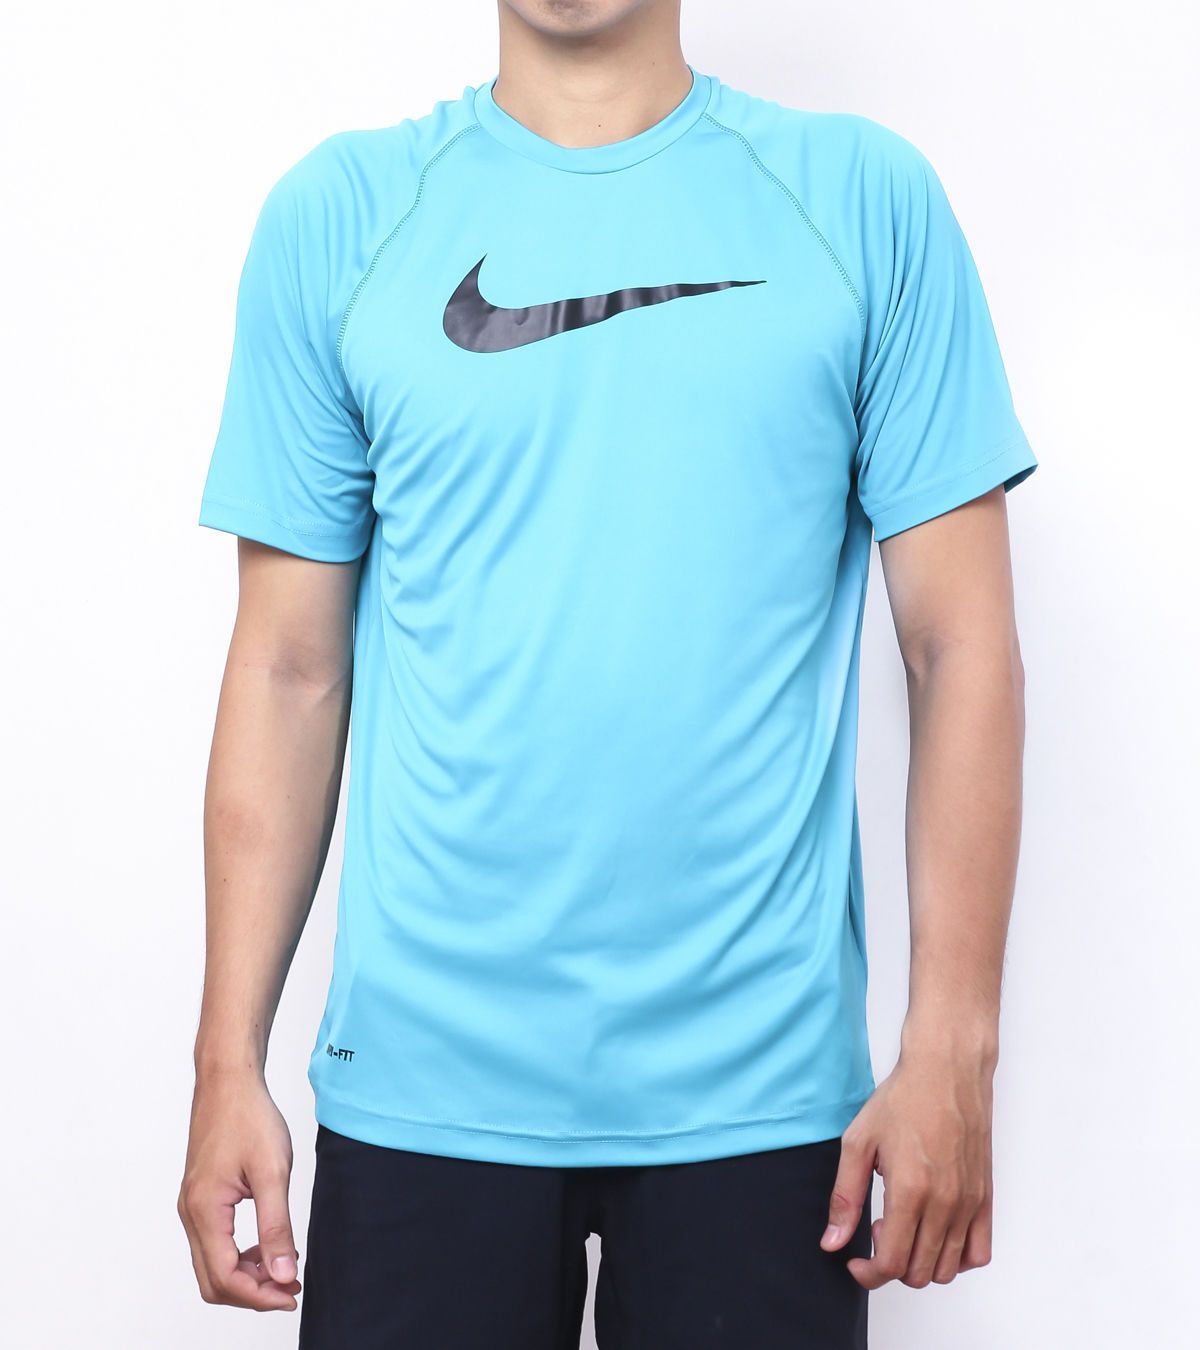  Nike - Áo Thun Thể Thao Nam DRI - FIT (Xanh Dương) 